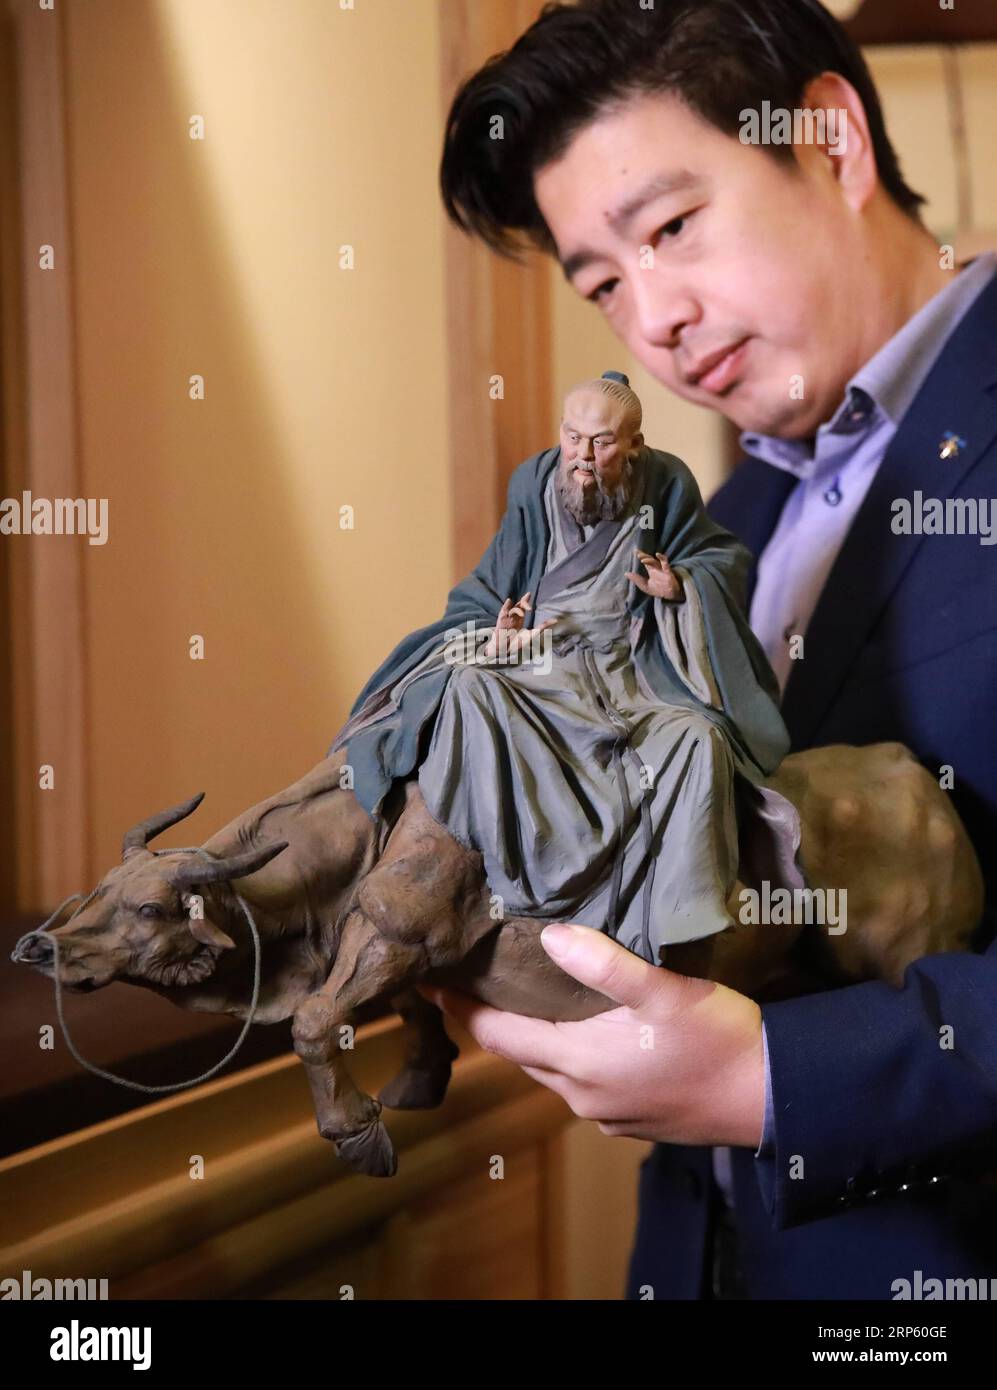 (181229) -- PÉKIN, 29 décembre 2018 (Xinhua) -- Zhang Yu, le fabricant de figurine en argile Zhang de sixième génération, regarde une figurine dans son atelier de la galerie d'art Zhang Figure en argile à Tianjin, dans le nord de la Chine, le 28 décembre 2018. Figure d'argile Zhang est un nom familier de l'art populaire traditionnel en Chine, et une telle œuvre a une histoire de près de 200 ans. Zhang Yu, le fabricant de figurines en argile de sixième génération de sa famille, a pris en charge l’entreprise familiale en 1996, alors qu’il n’avait que 18 ans. Au fil du temps, le métier et la marque ont évolué. Au lieu de fabriquer des figurines et de les vendre comme un vendeur de rue, lui Banque D'Images